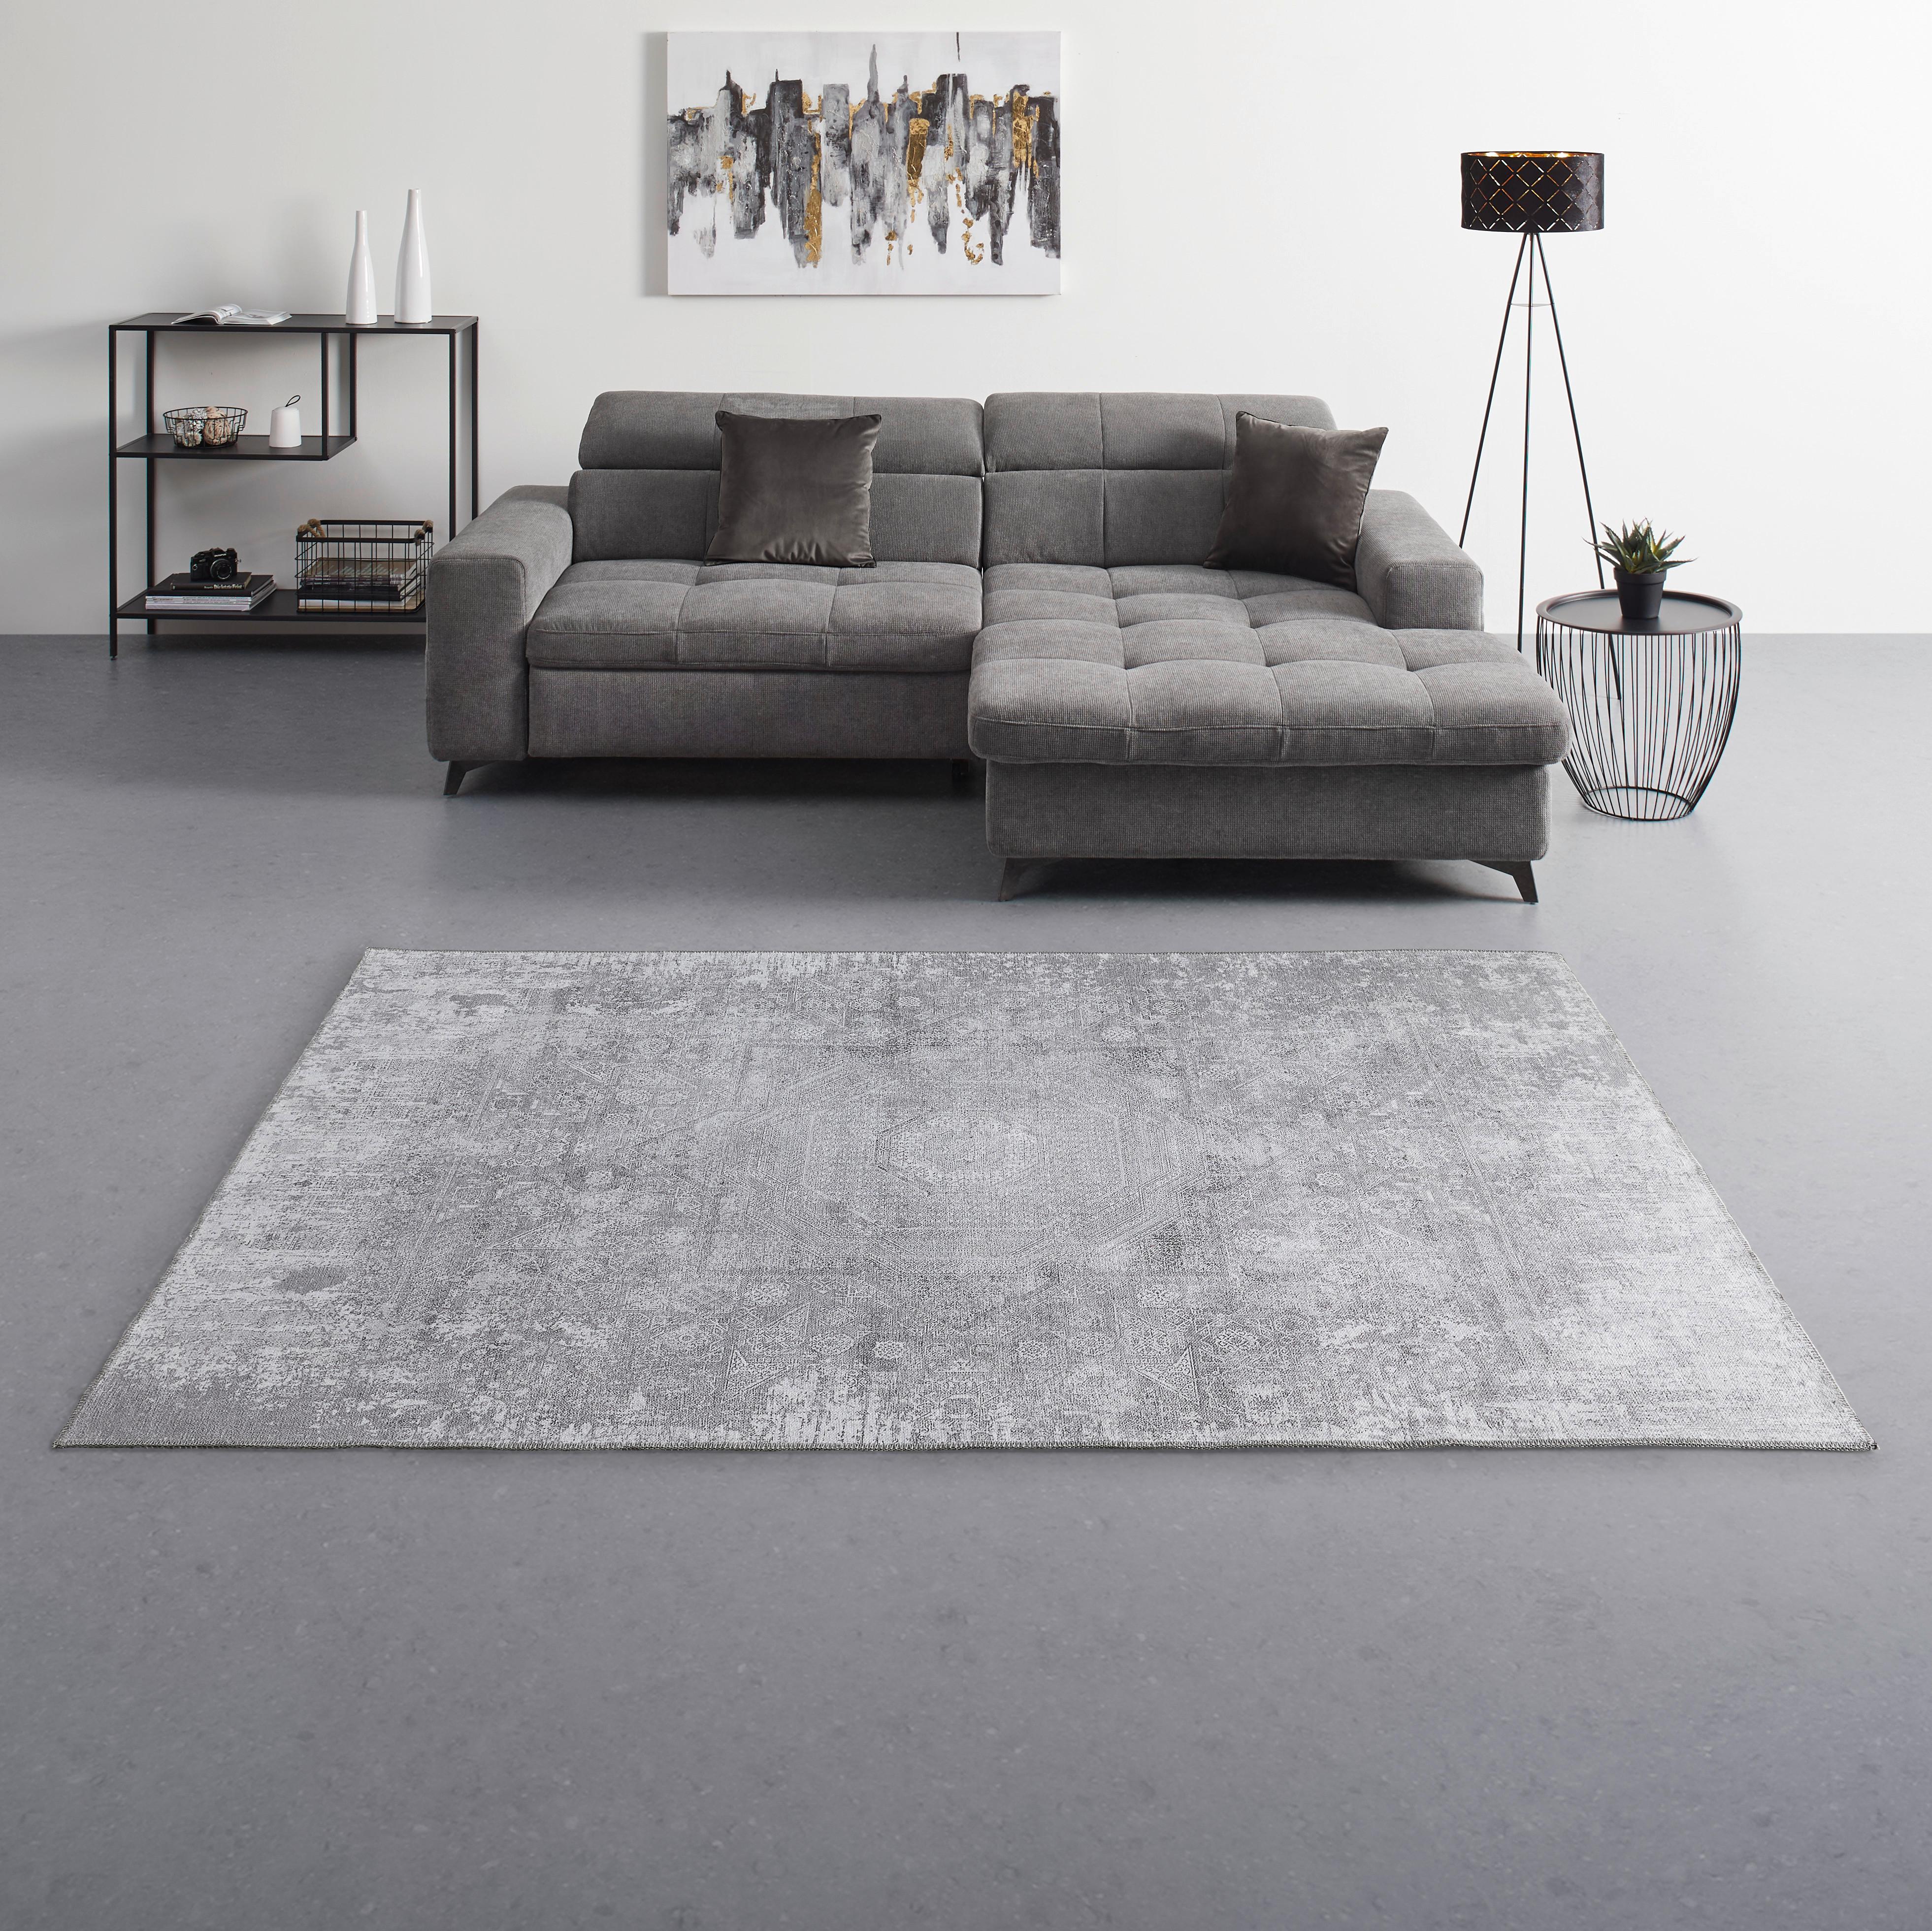 Tepih Niskog Tkanja 80/200cm Olivia - krem, Konventionell, tekstil (80/200cm) - Modern Living